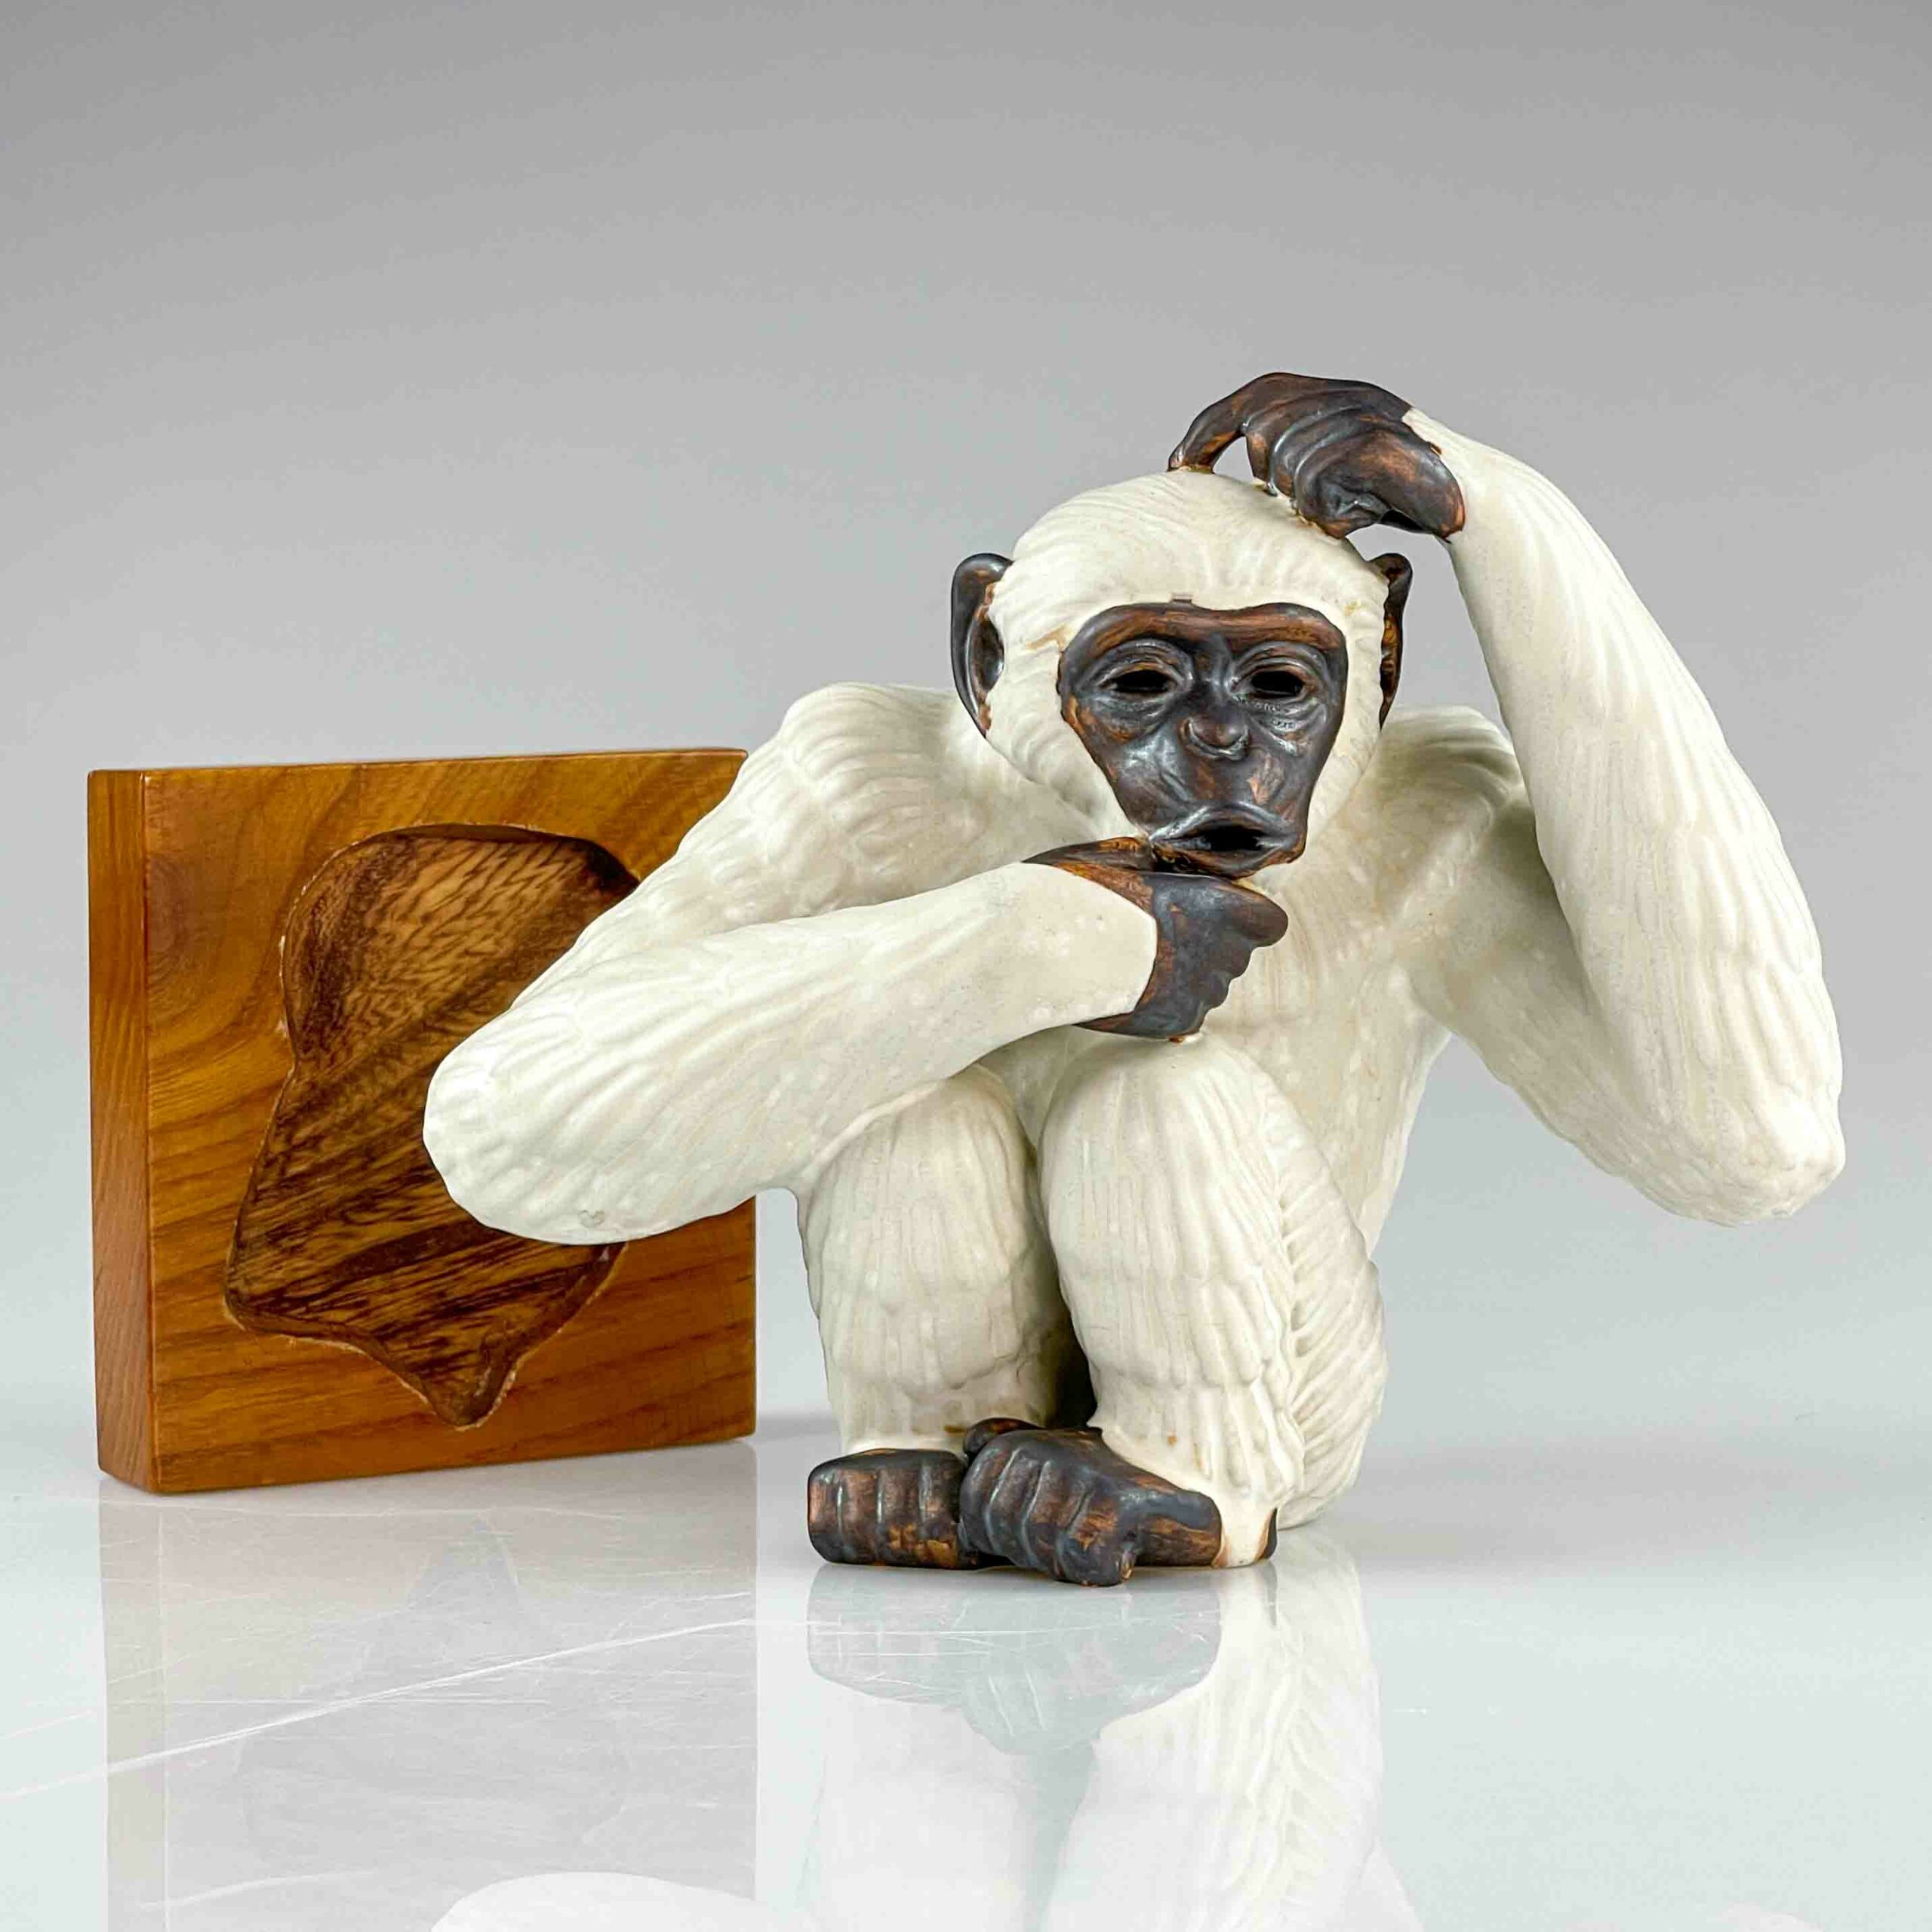 Gunnar Nylund - A glazed stoneware sculpture of a Monkey - Rörstrand, Sweden ca. 1950